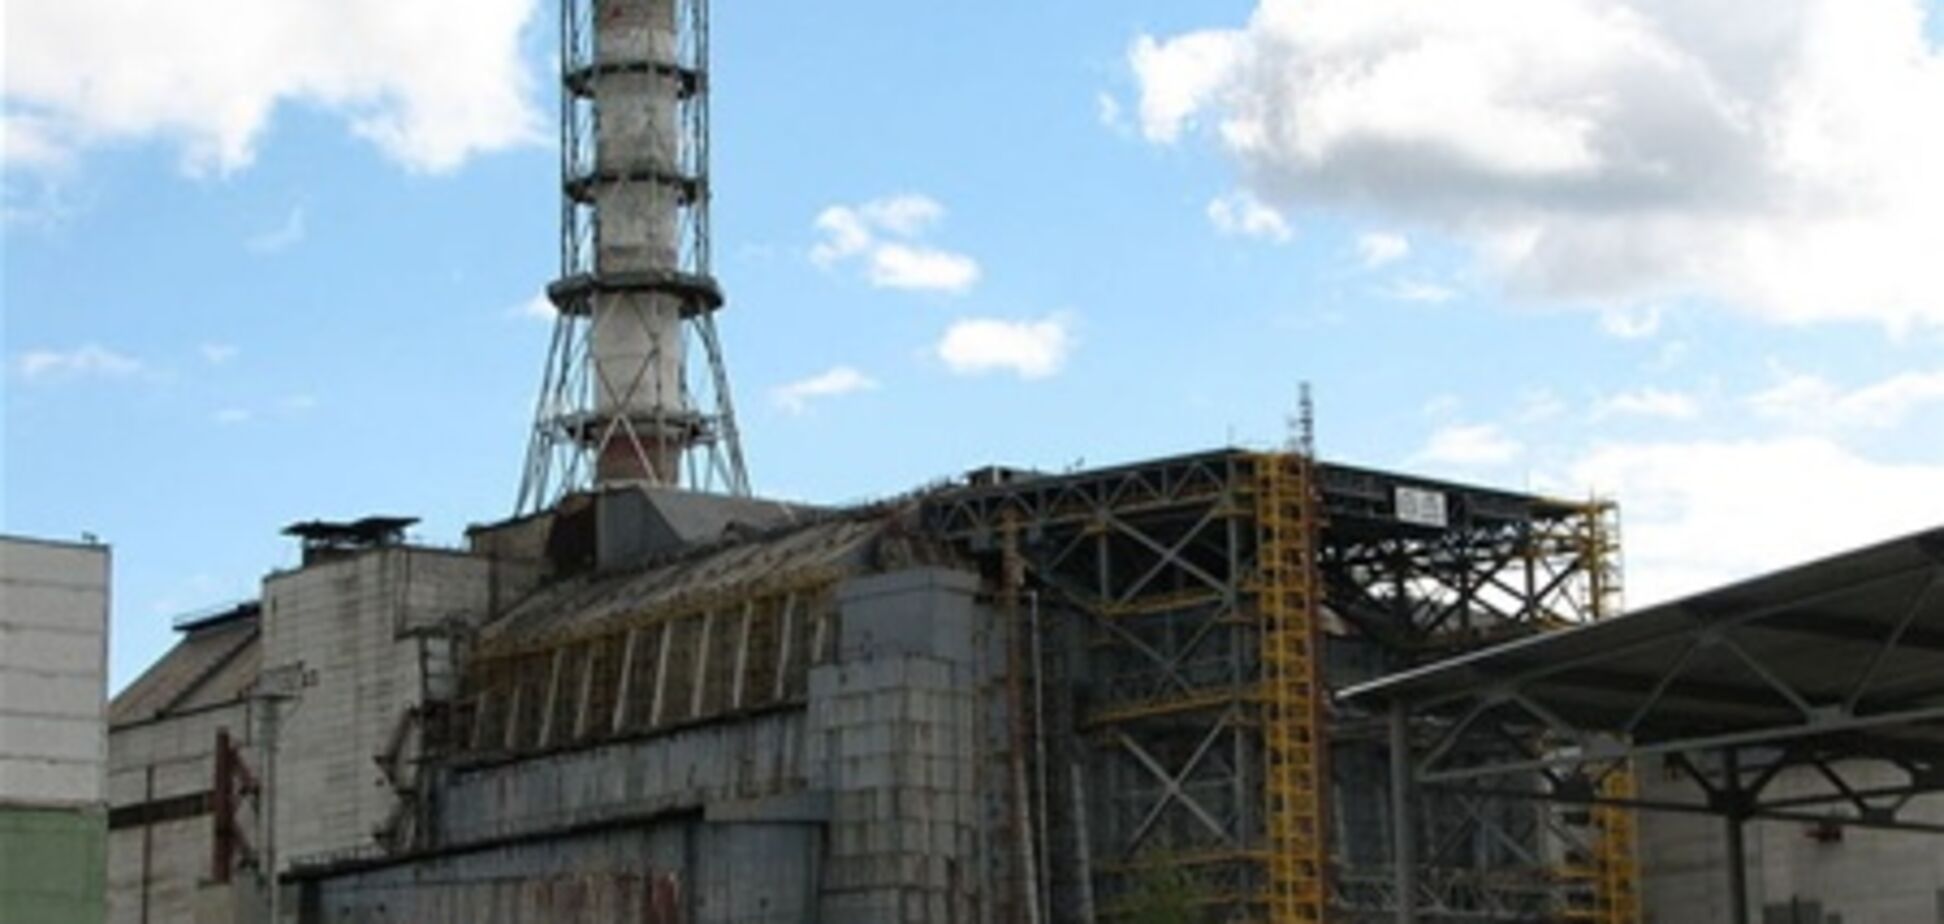 Туристы проявляют повышенный интерес к Чернобылю